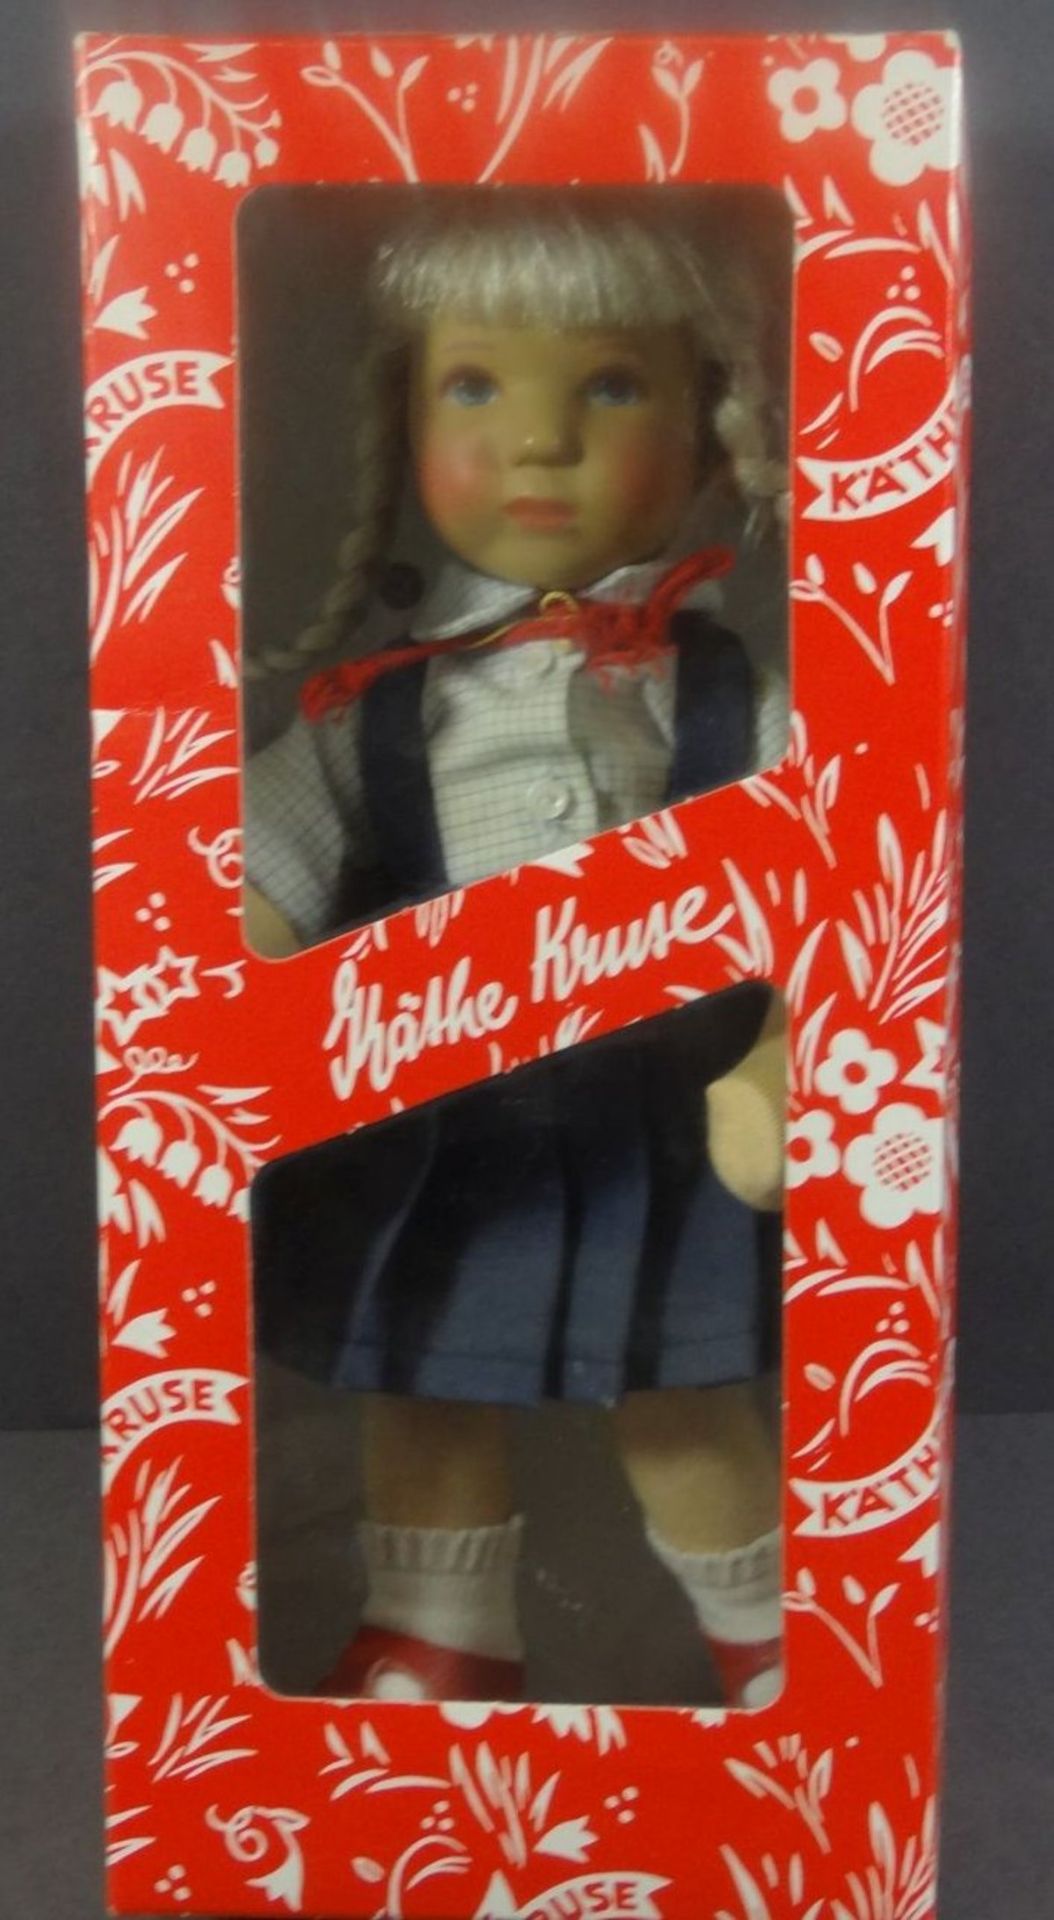 Käthe Kruse Puppe in Orig. Karton, H-25 cm, orig. Etikette - Image 2 of 5